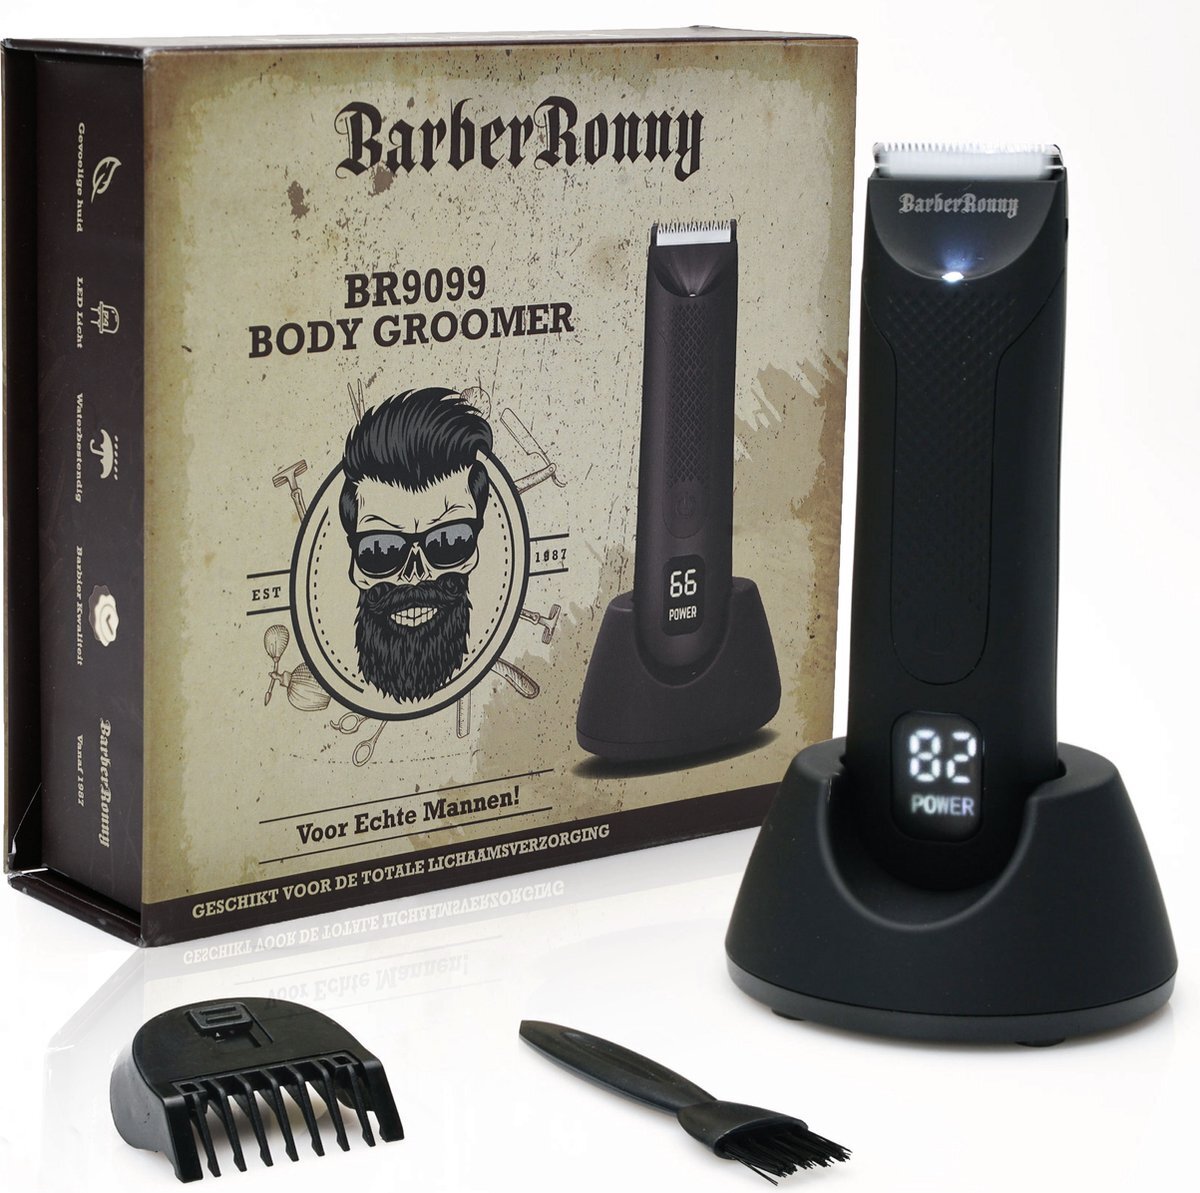 BarberRonny BarberRonny® BR9099 - Body Groomer - Mannen - Body Trimmer - Tondeuse met LED-verlichting - Body Shaver - Waterdicht